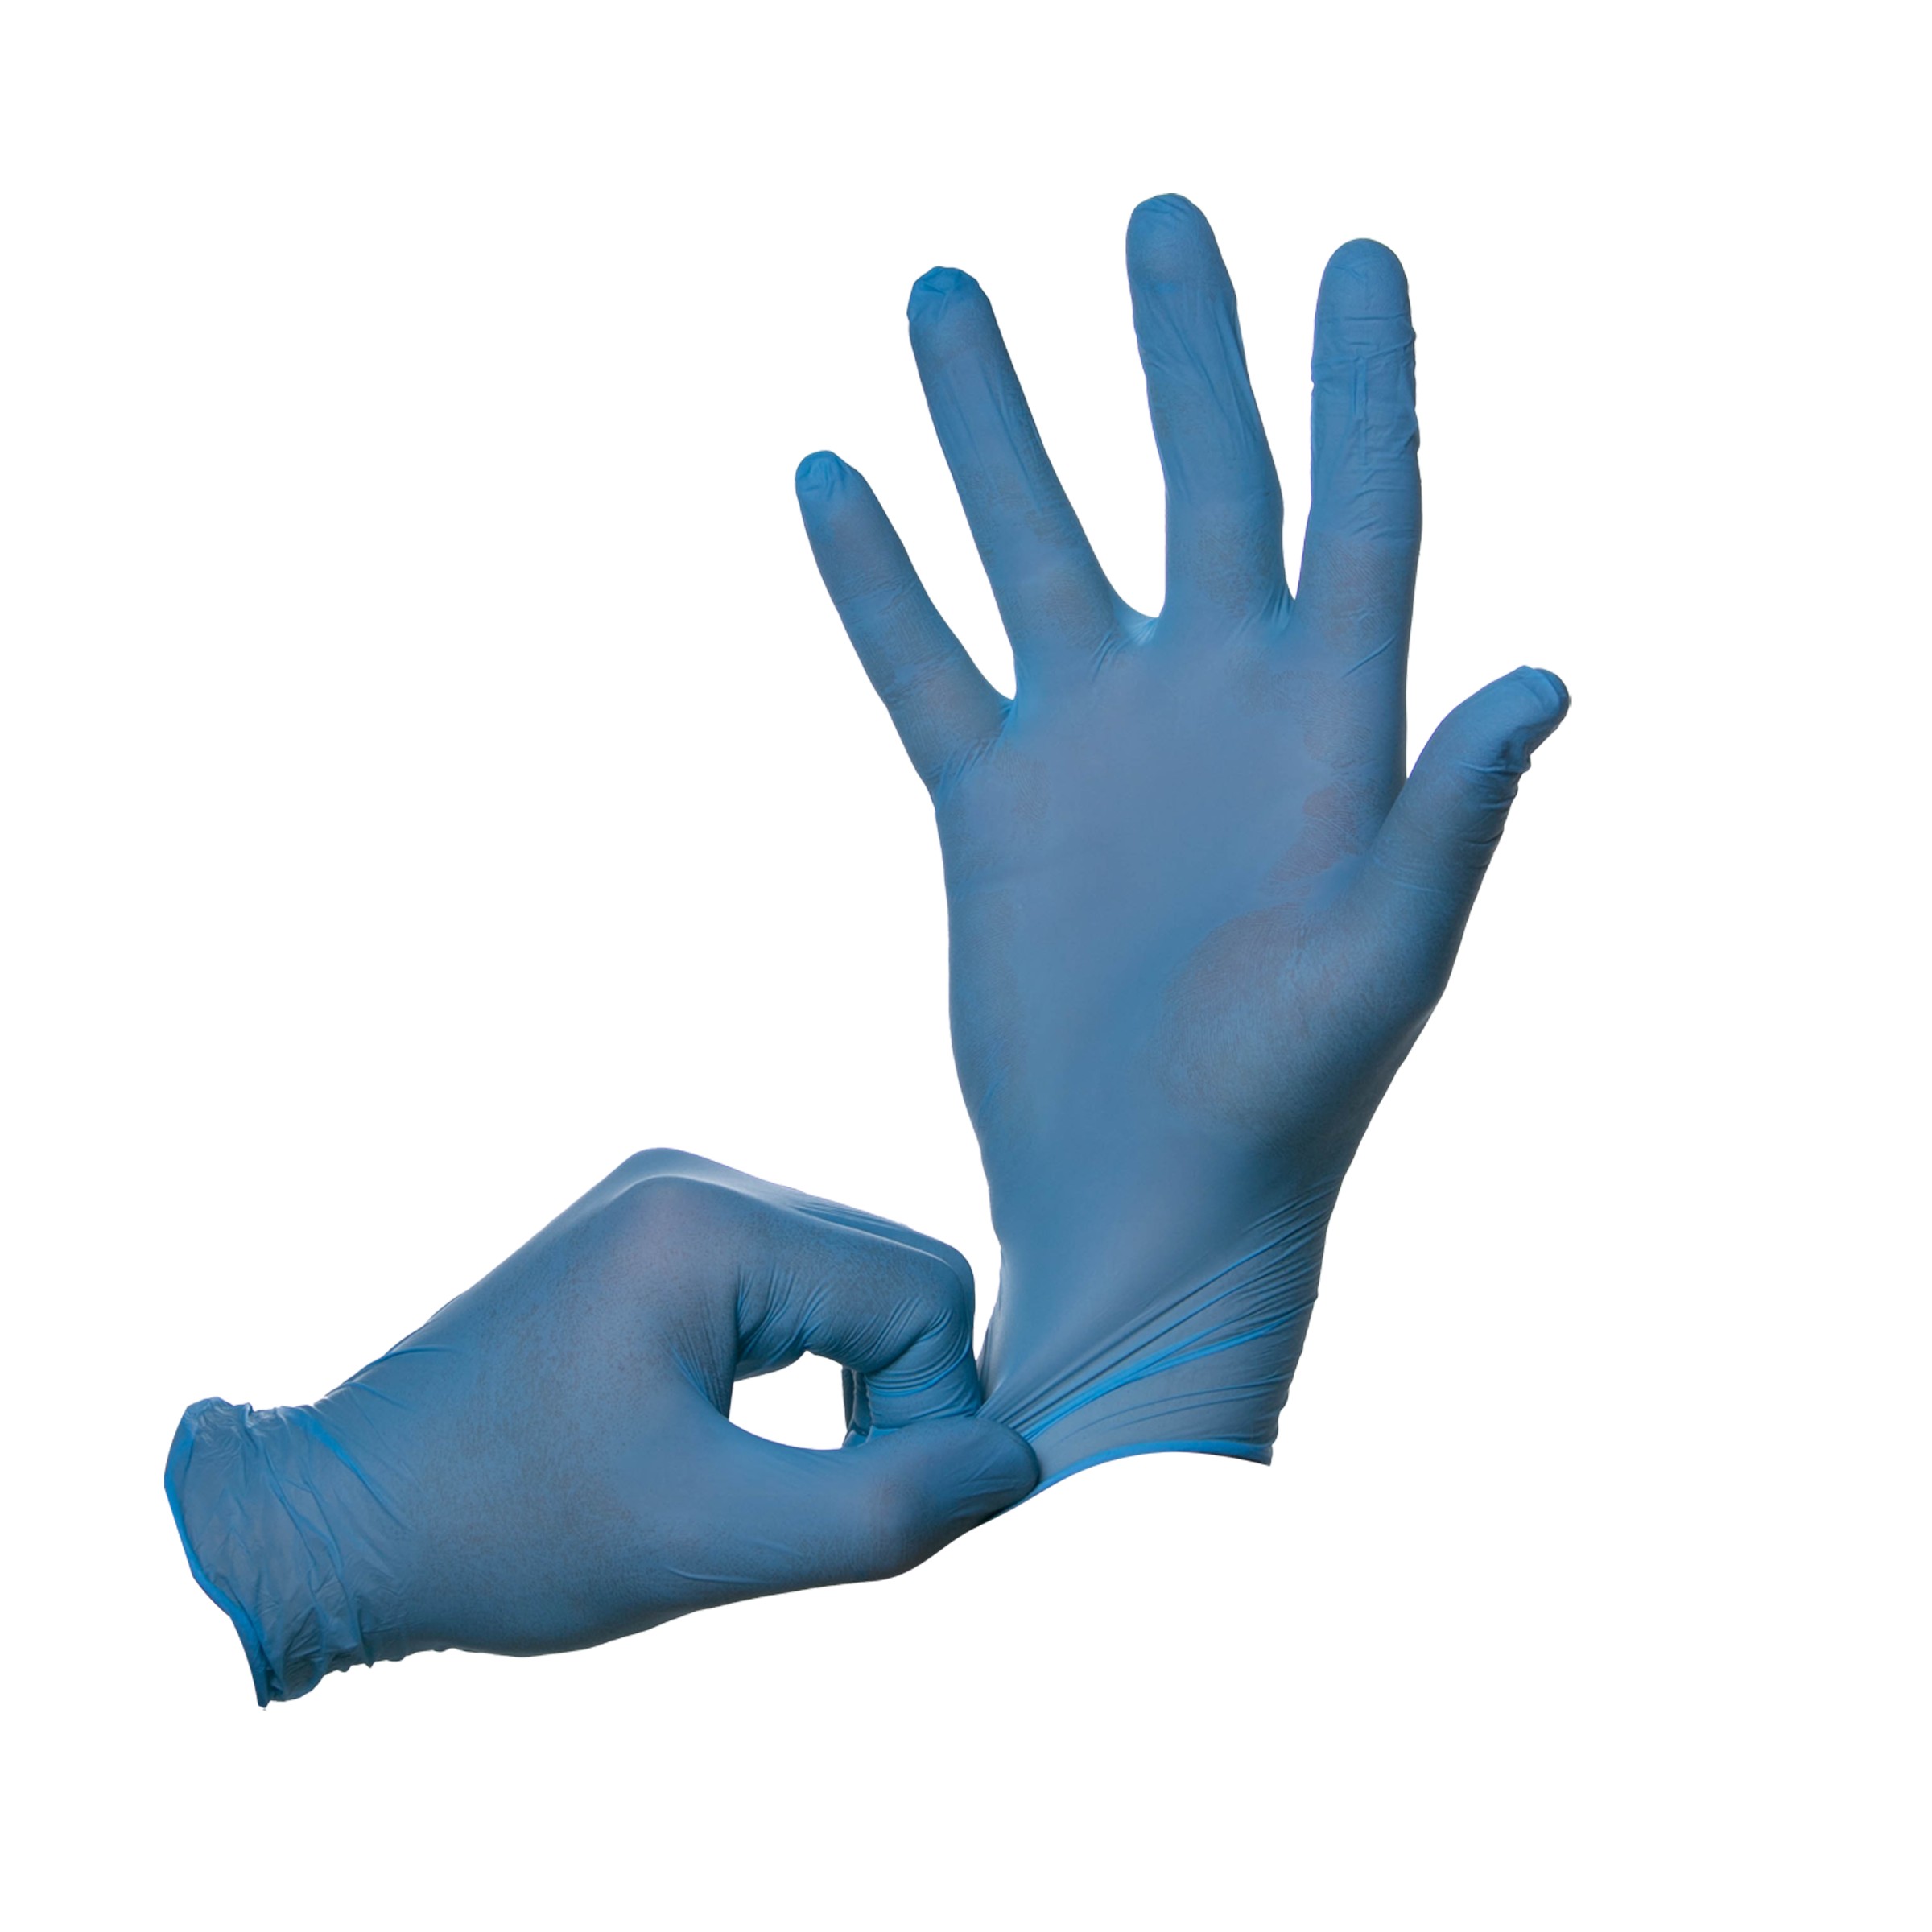 Перчатки INEKTA диагностические (смотровые) нестерильные нитриловые неопудренные текстурированные. Размер M. Голубого цвета.